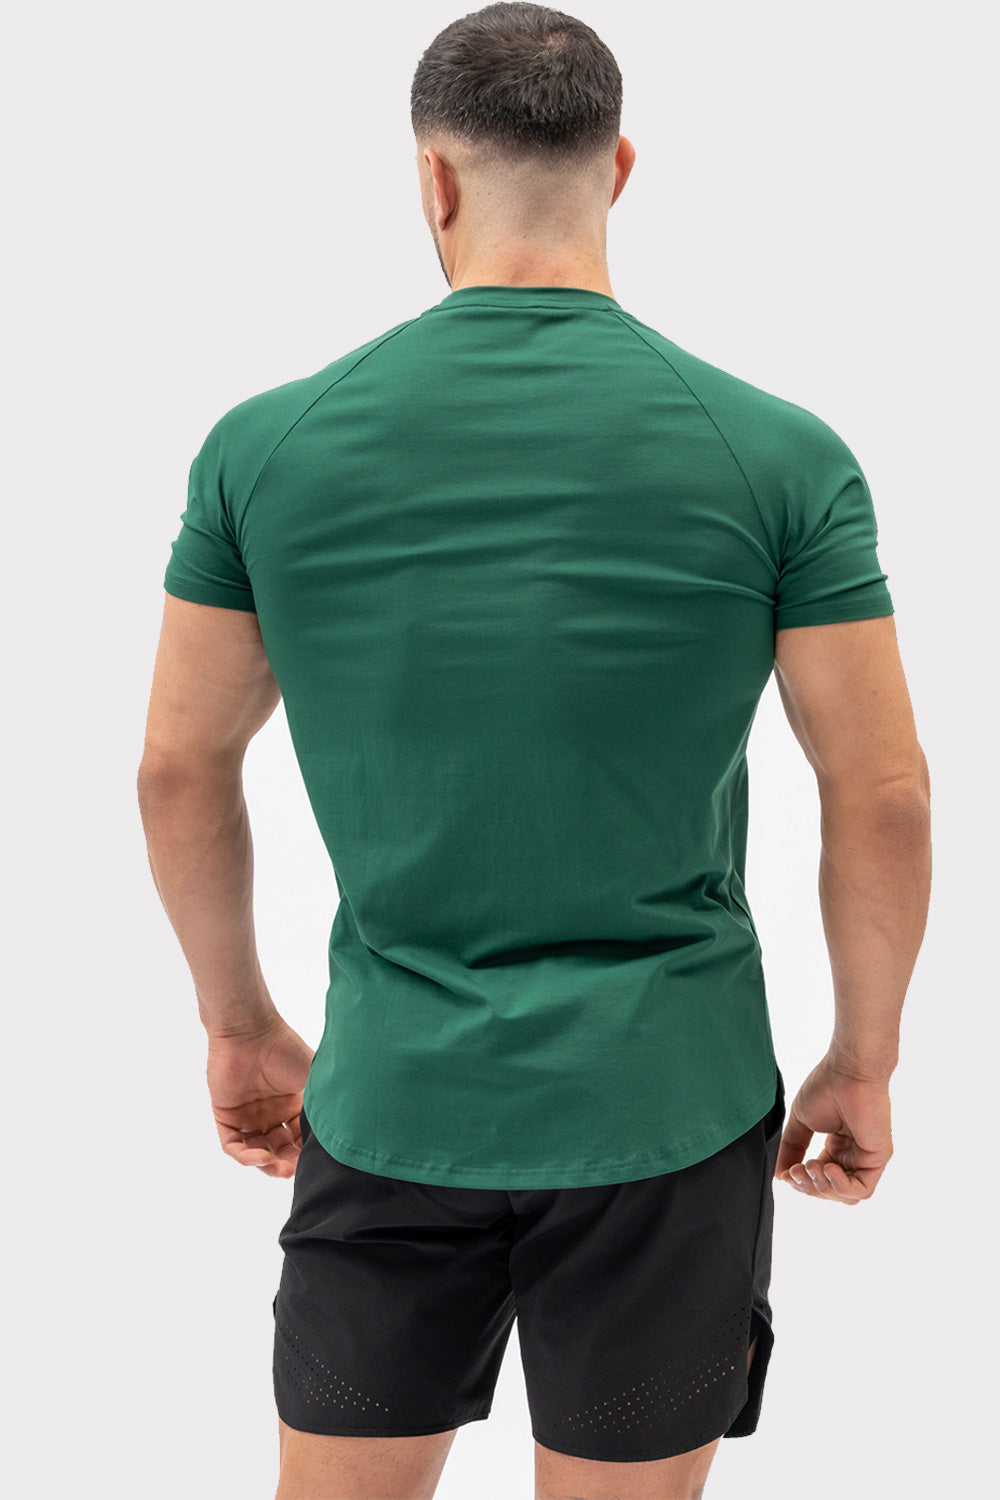 A CODE T-Shirt - Tmavě zelené